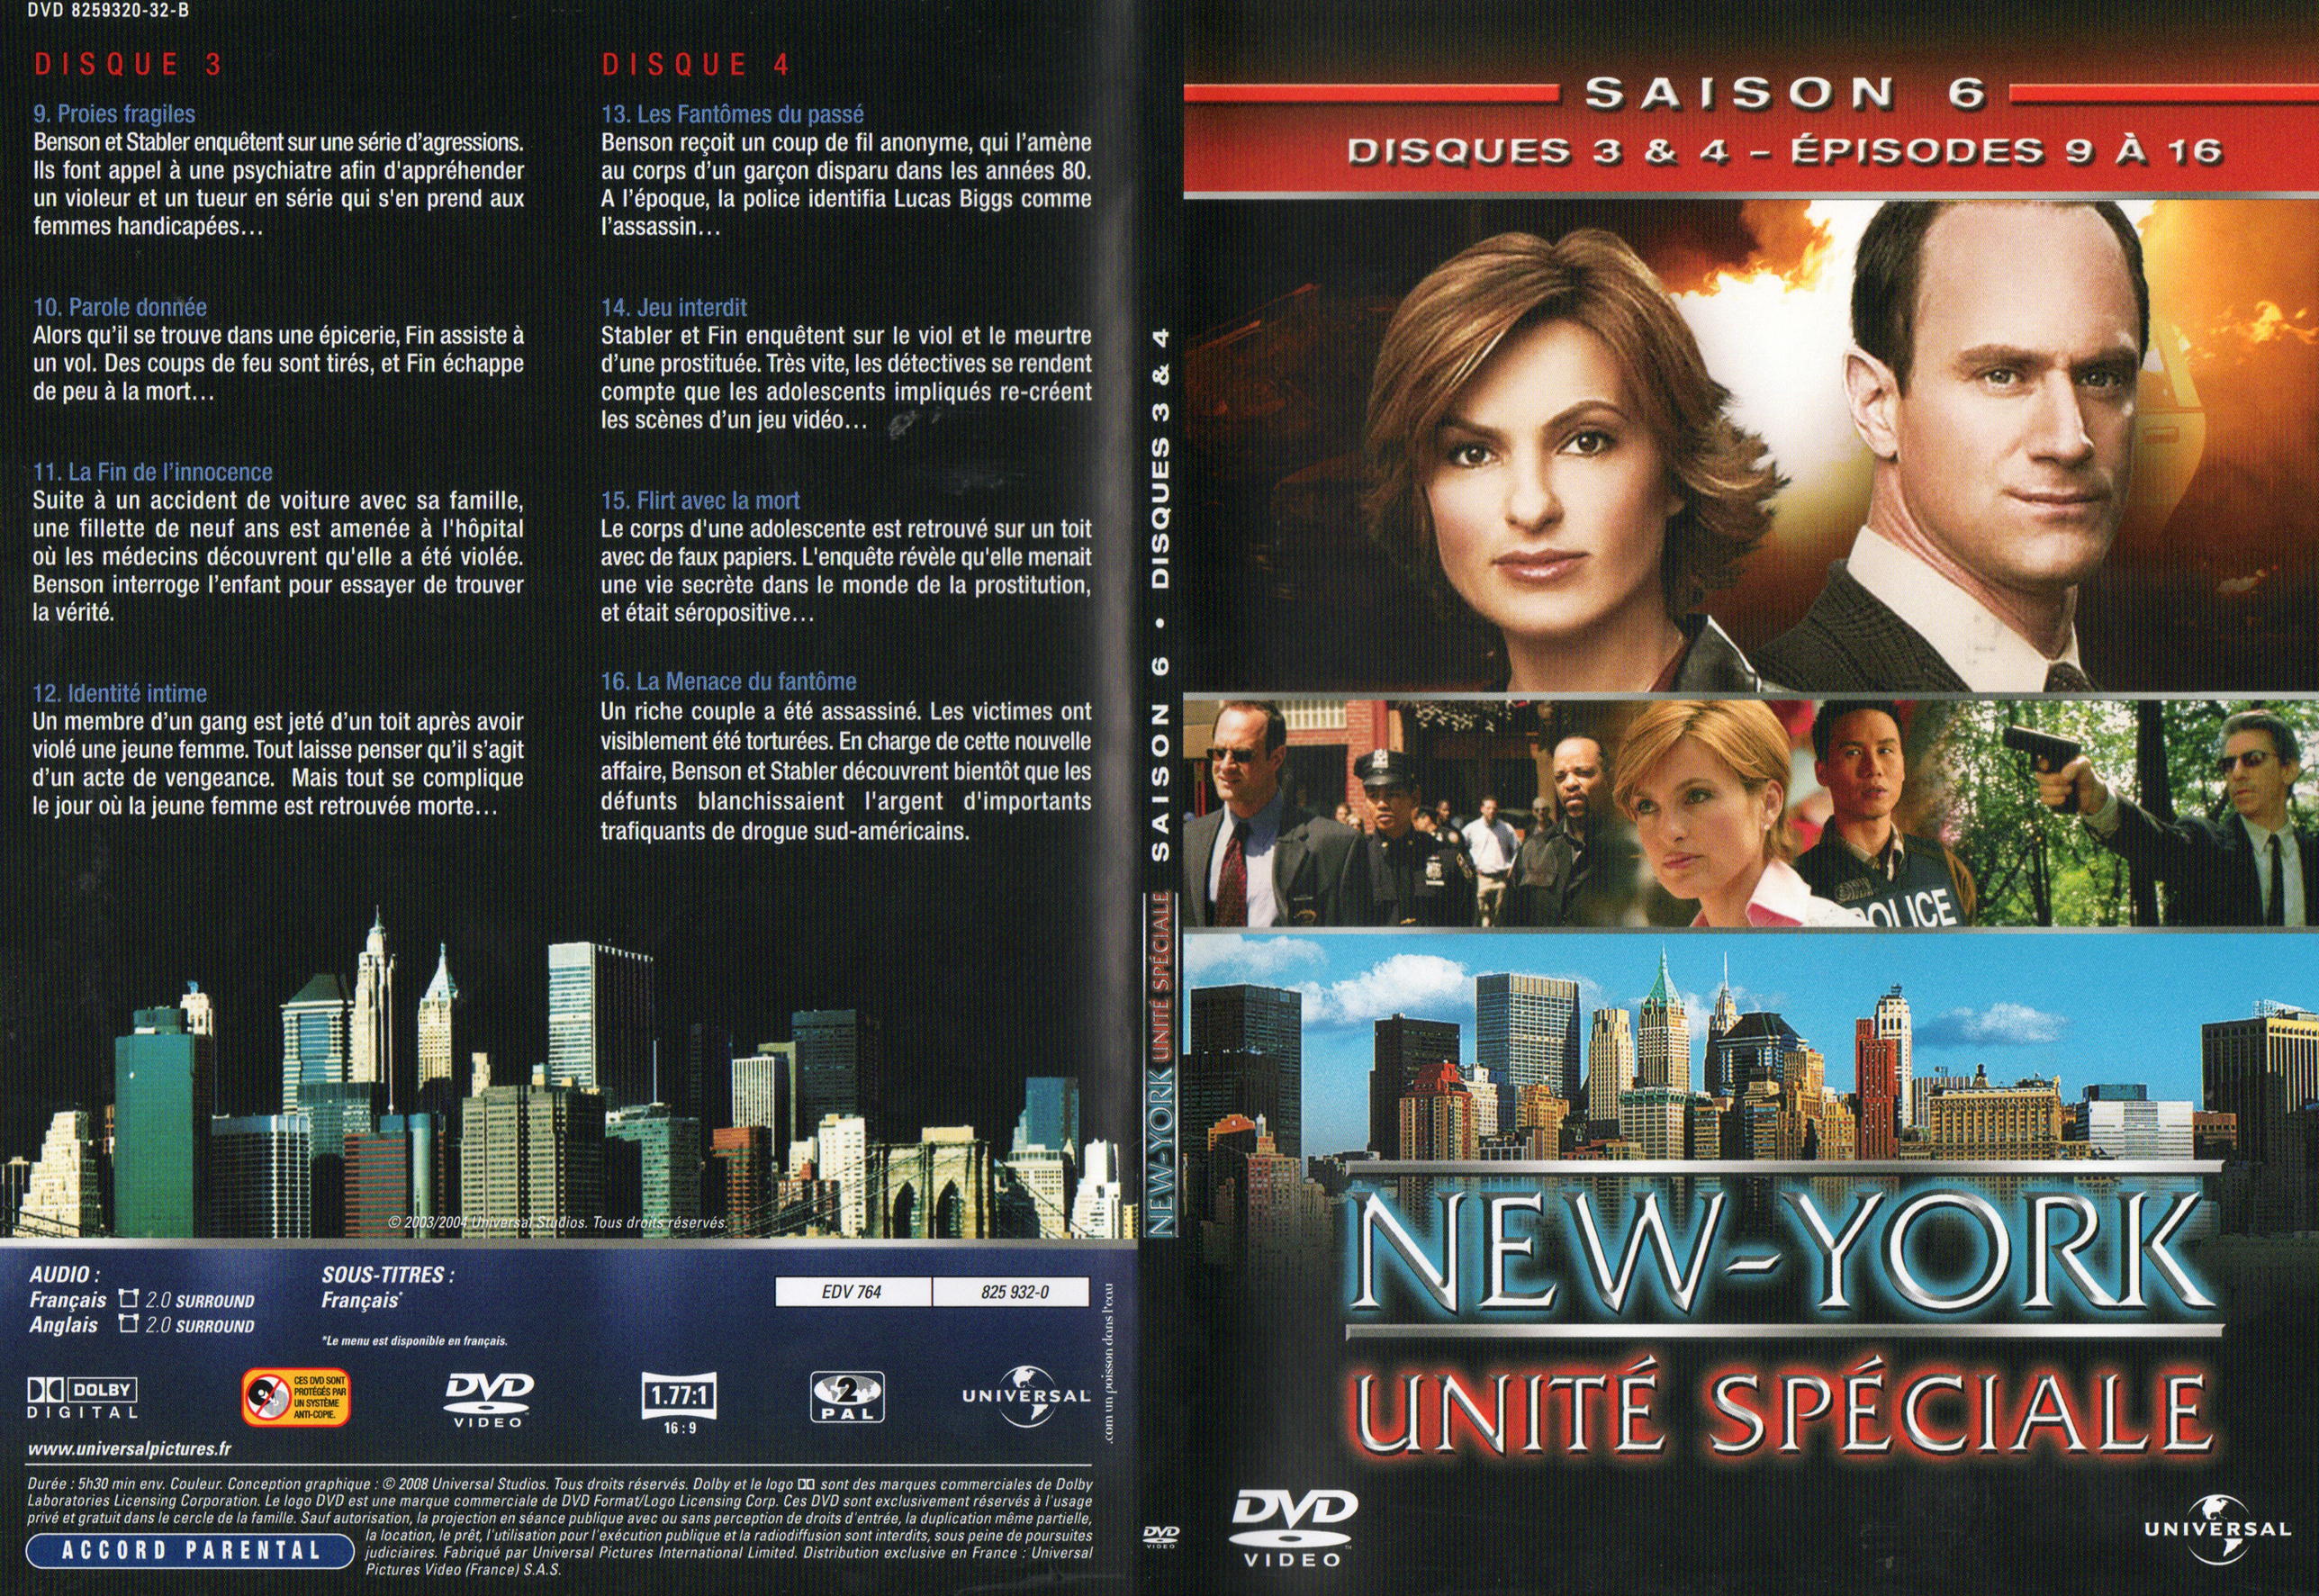 Jaquette DVD New York unit spciale saison 6 DVD 2